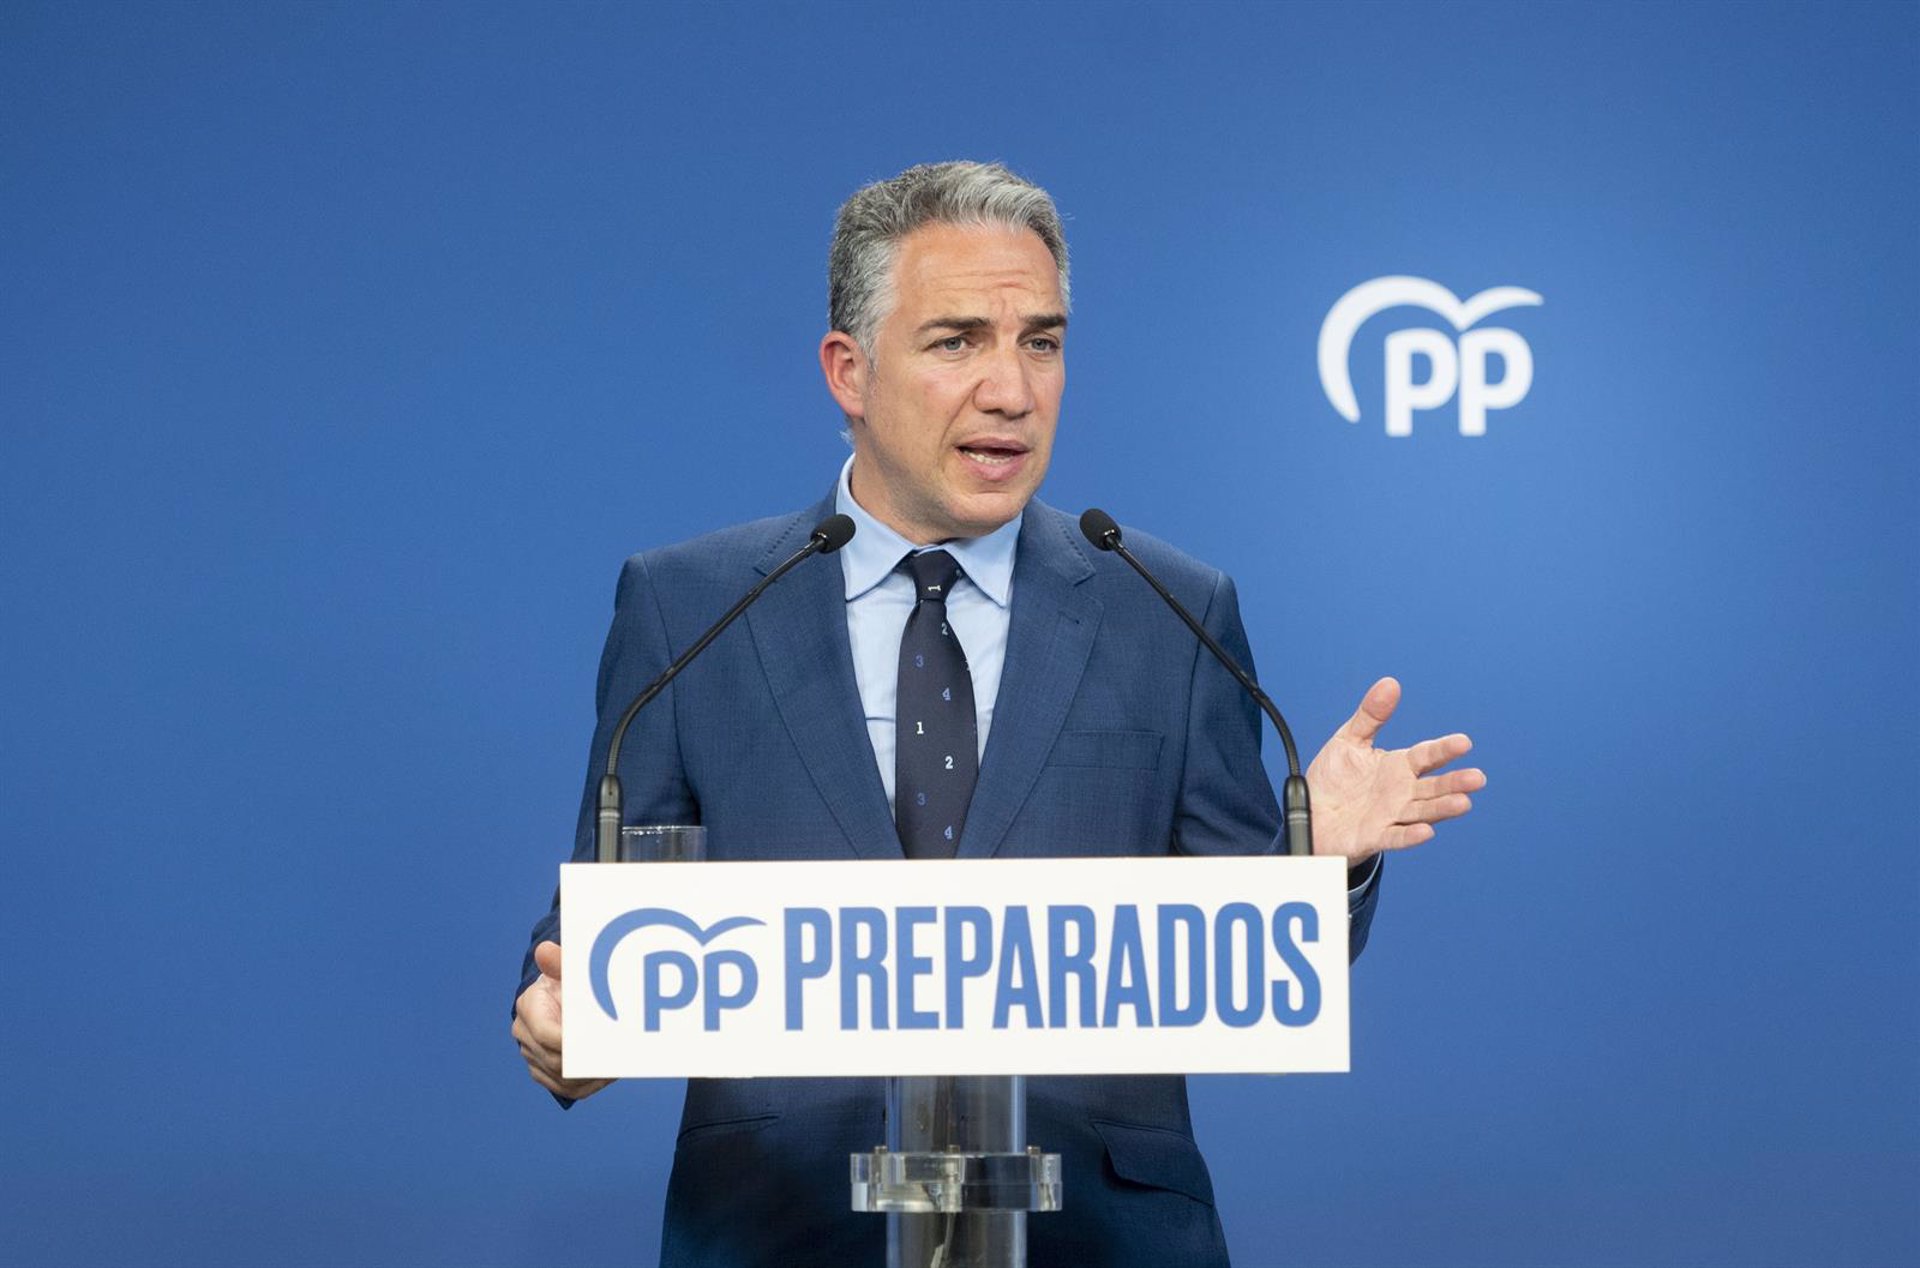 El coordinador general del PP defiende que Cataluña es una "nacionalidad" dentro de España